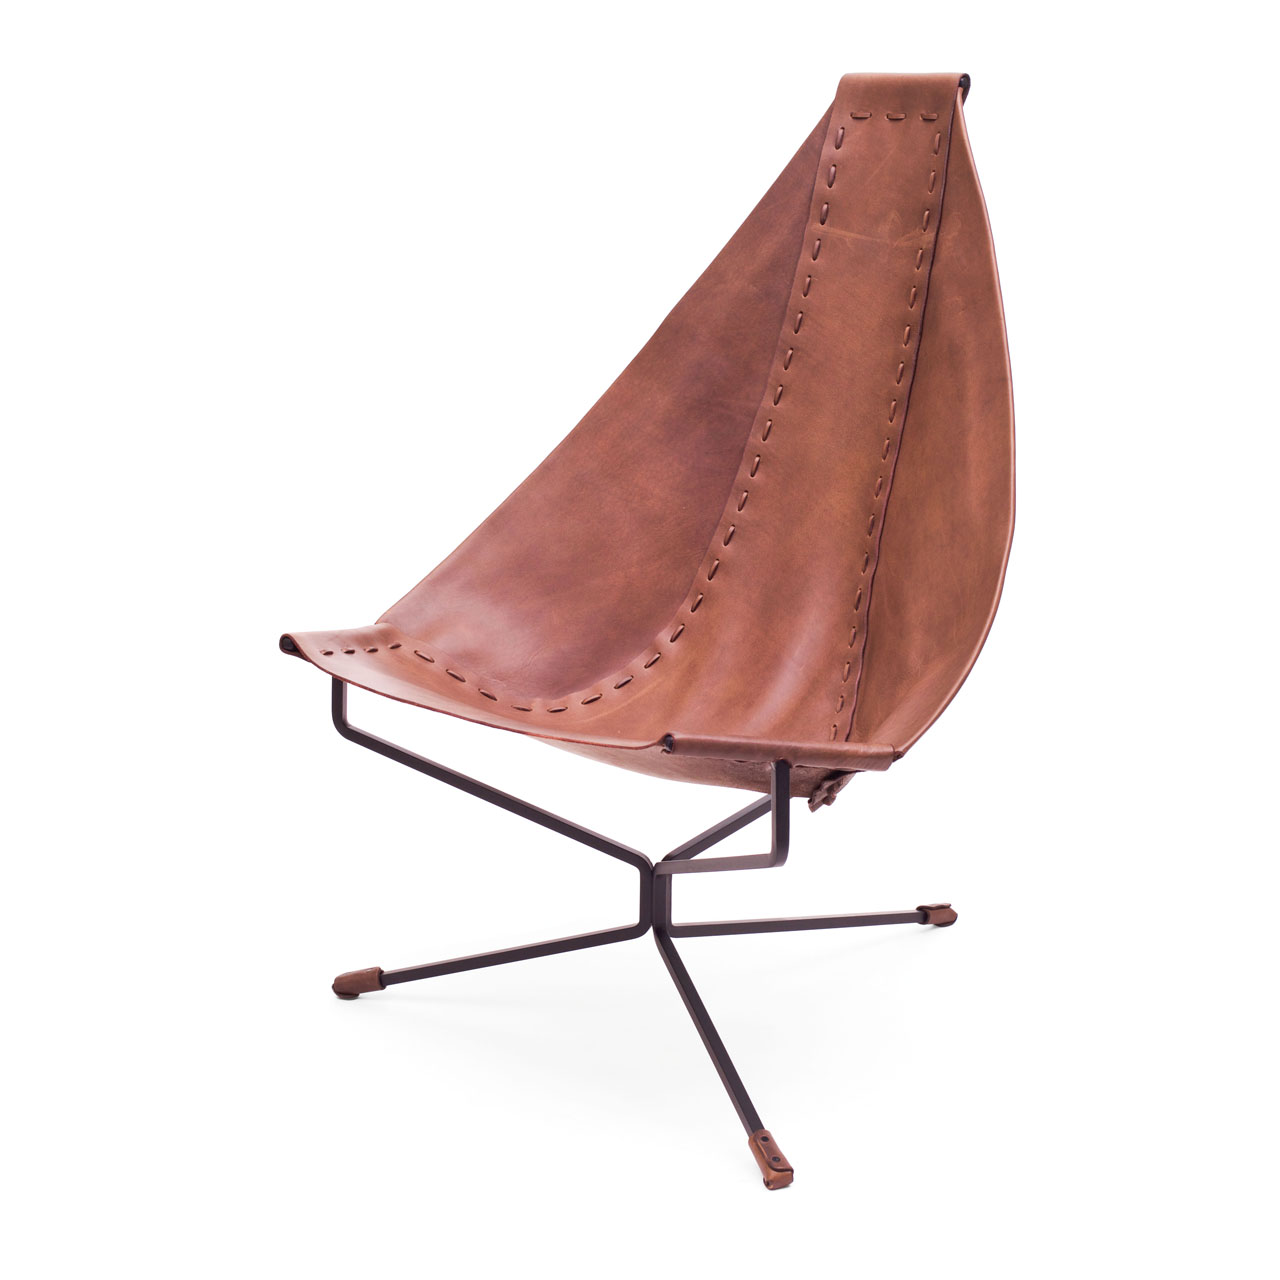 Enclosed Lotus Chair by Dan Wenger